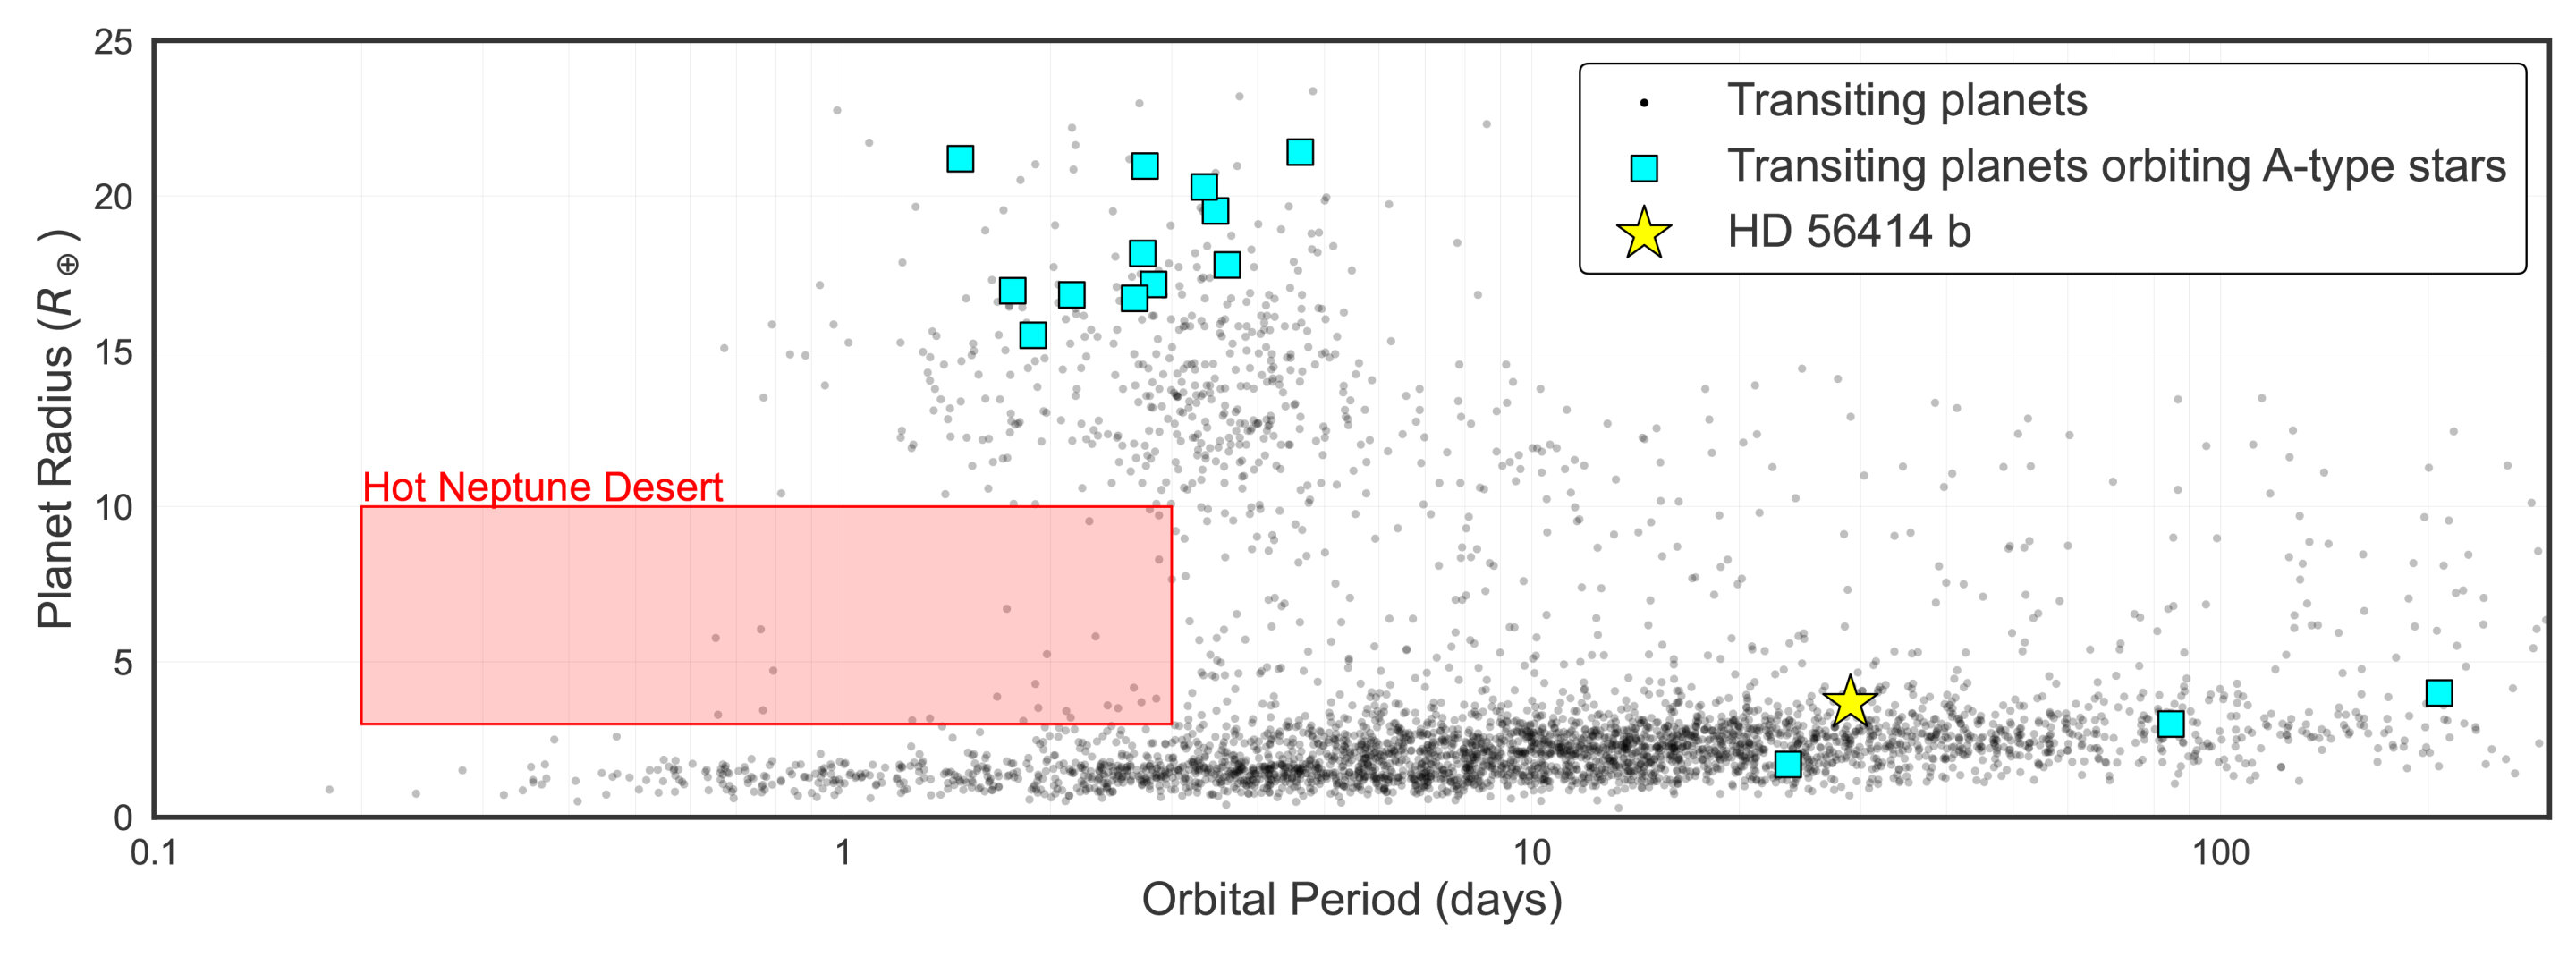 Знайдена екзопланета (жовта зірка) порівняно з параметрами інших транзитних екзопланет біля подібних зірок (сині квадрати), а також з іншими транзитними екзопланетами біля інших зірок на діаграмі радіус планети-орбітальний період.&amp;nbsp;Steven Giacalone et al. / The Astrophysical Journal Letters, 2022